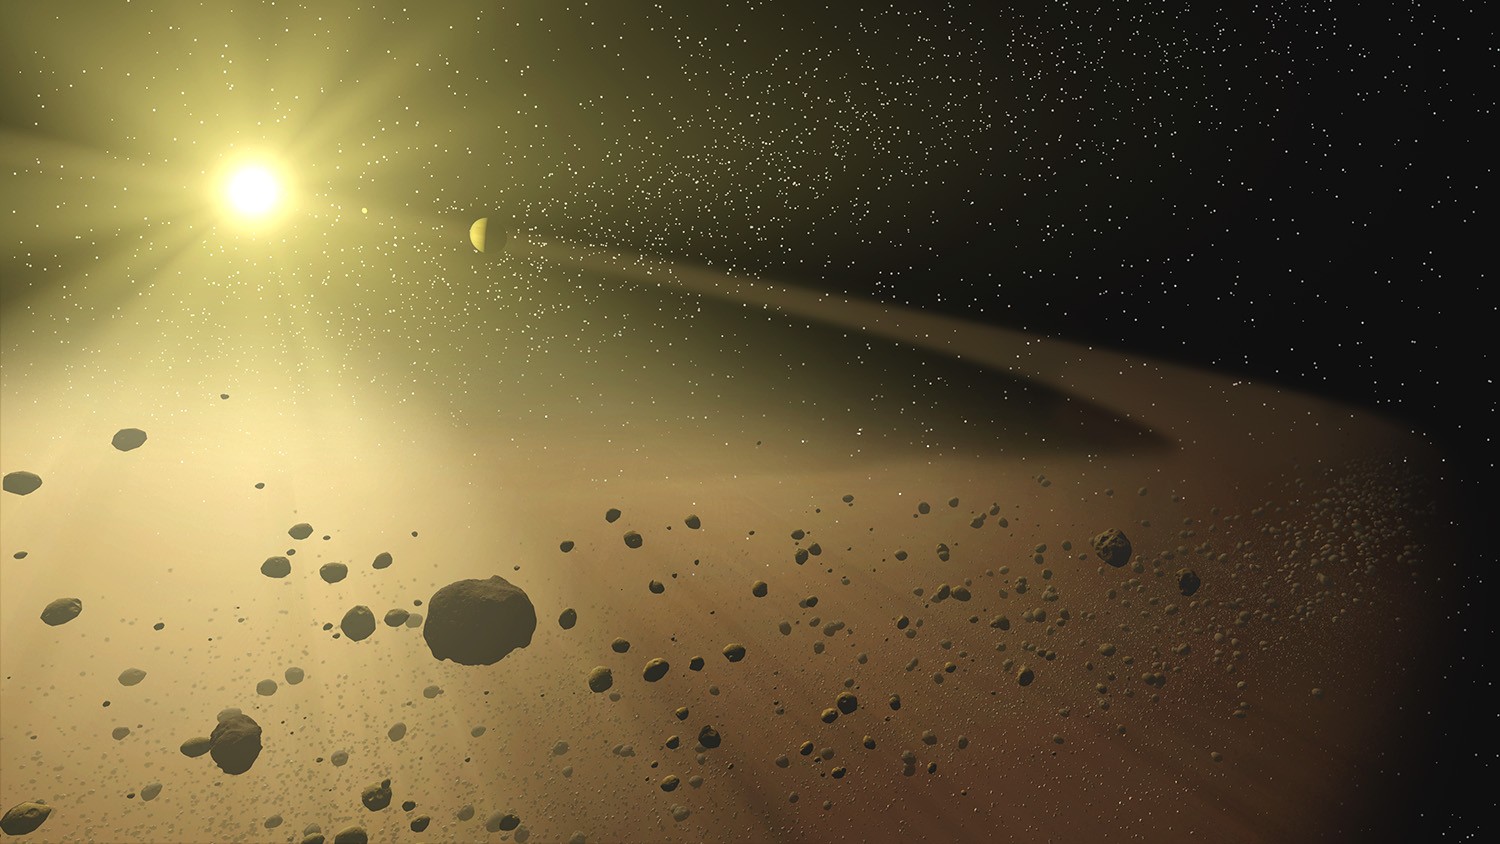 O que gira em torno da estrela KIC 8462852: megaestruturas alienígenas ou cometas? (Foto: NASA/JPL-Caltech/T. Pyle (SSC))